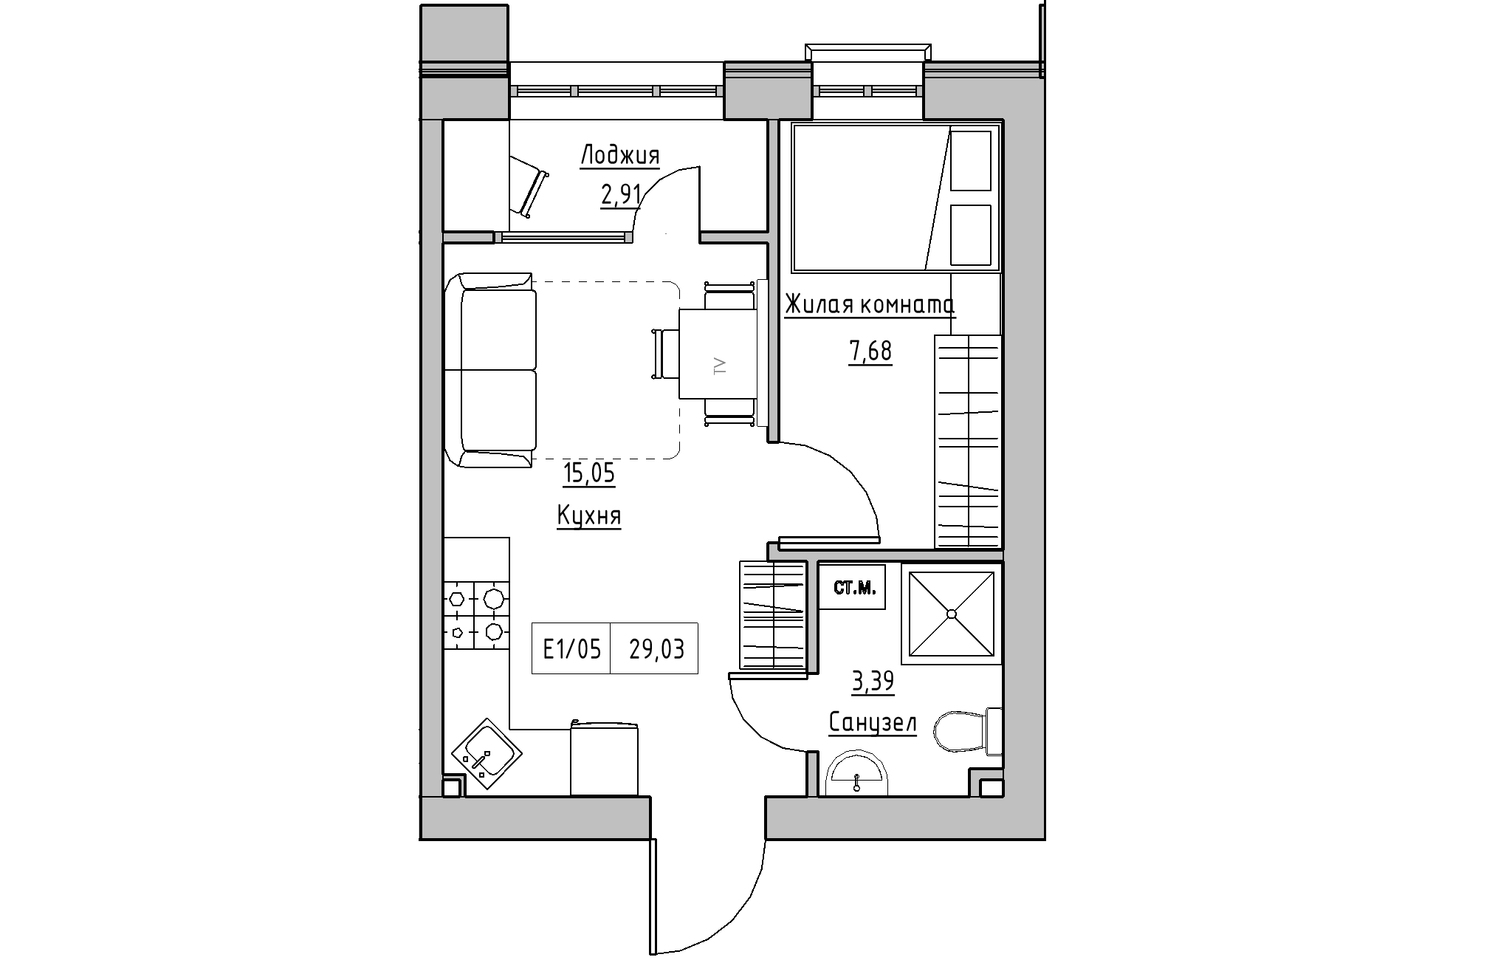 Планування 1-к квартира площею 29.03м2, KS-010-02/0007.